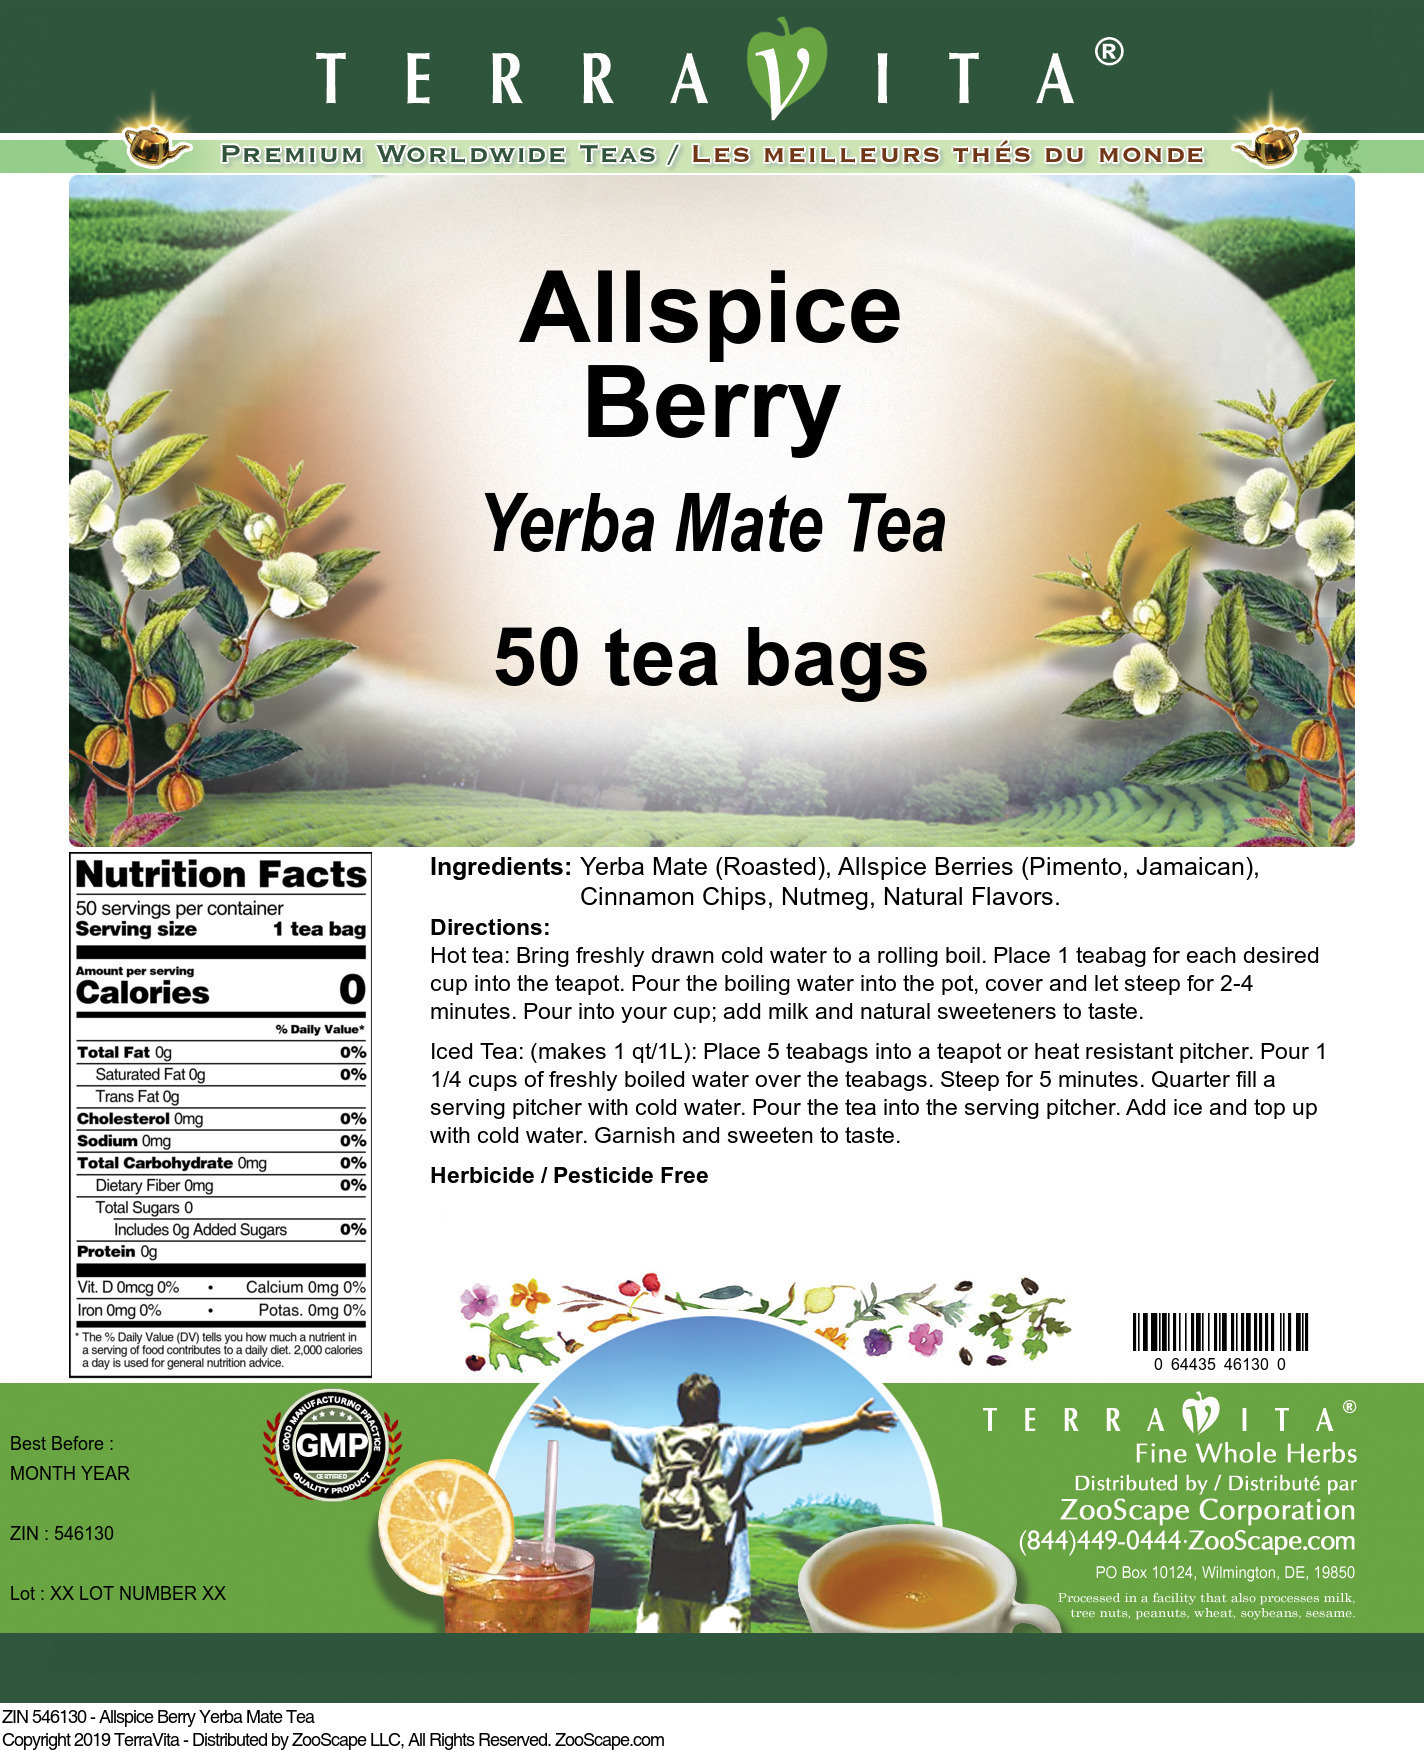 Allspice Berry Yerba Mate Tea - Label